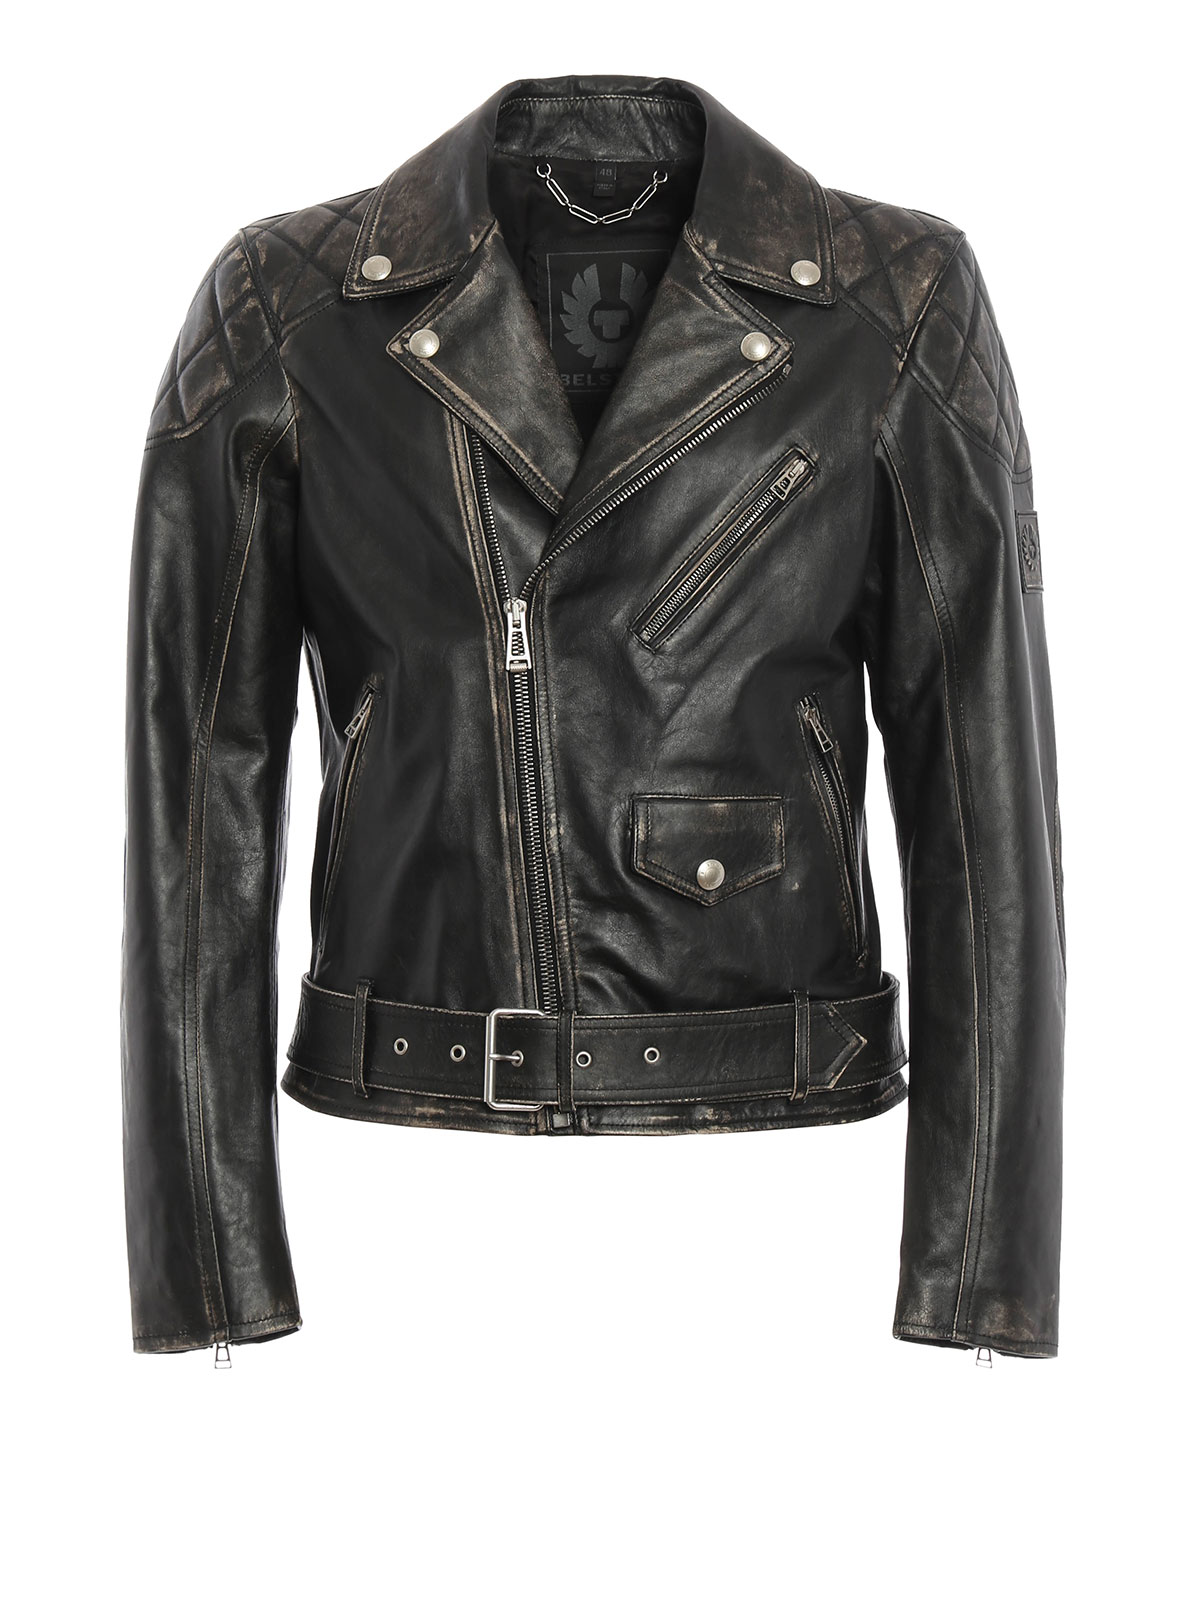 Leather jacket Belstaff - Arlingham leather biker jacket ...